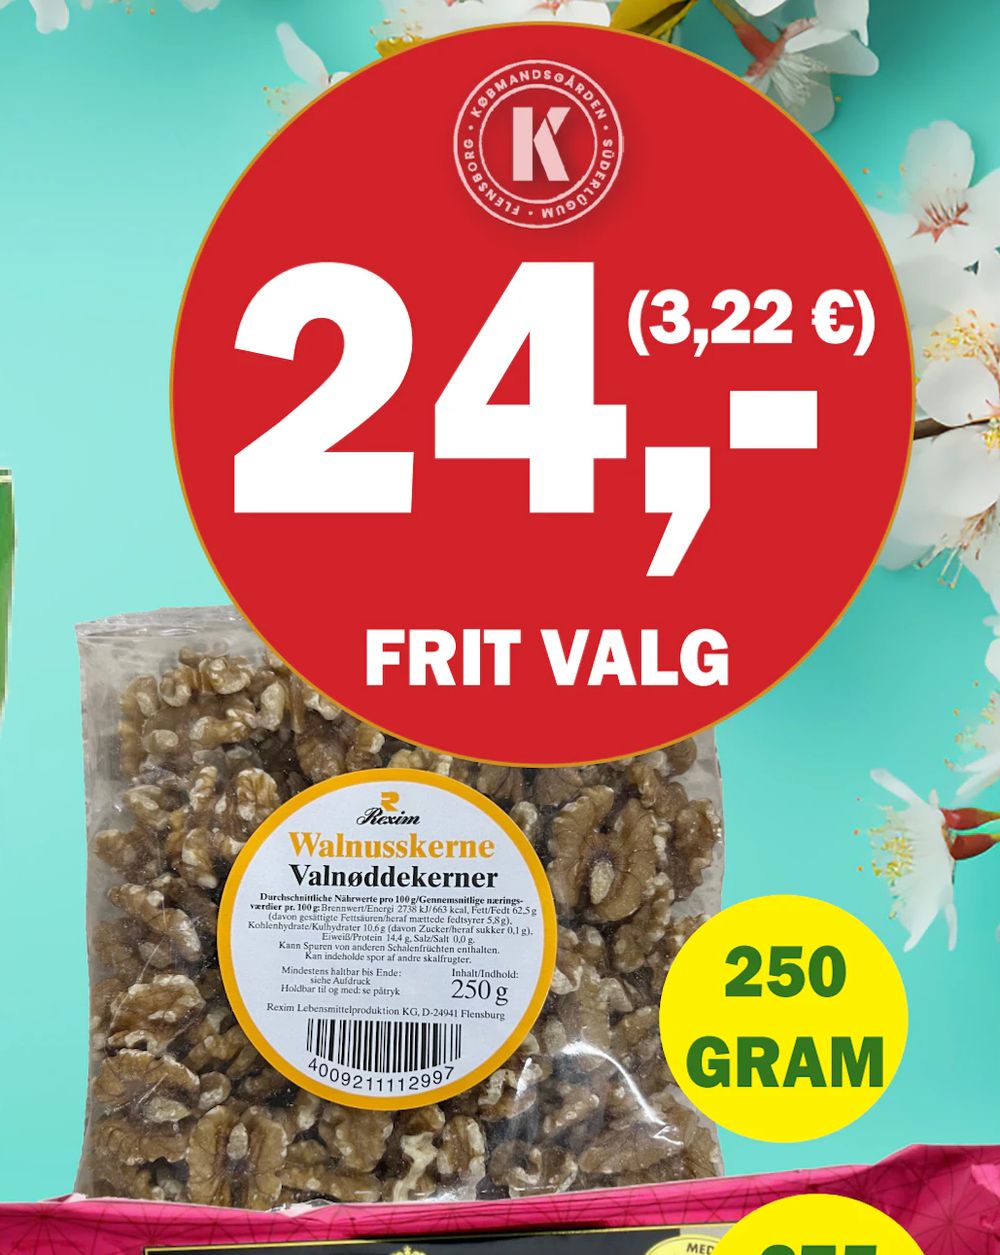 Tilbud på Rexim Valnøddekerner fra Købmandsgården til 24 kr.